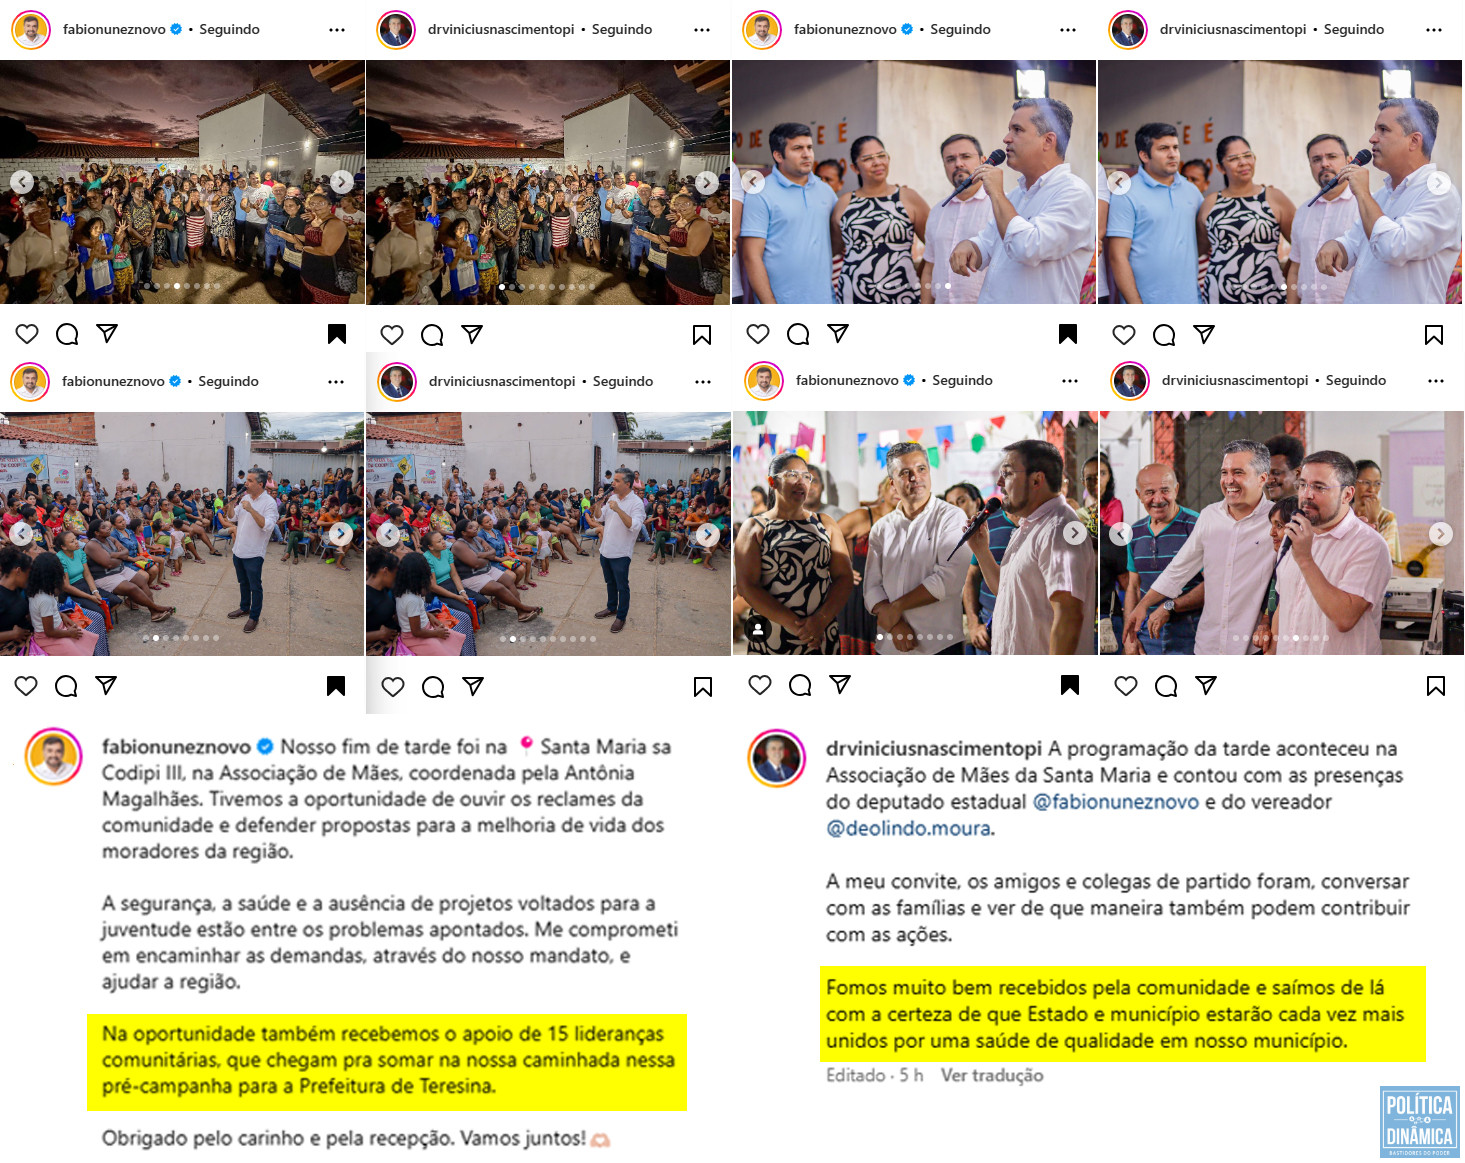 Fábio e Vinícius usam as mesmas fotos no Instagram para falar do evento na Associação de Maes da Santa Maria e o texto dos posts são sugestivamente inclunados à campanha eleitoral (foto: montagem com imagens do Instagram)